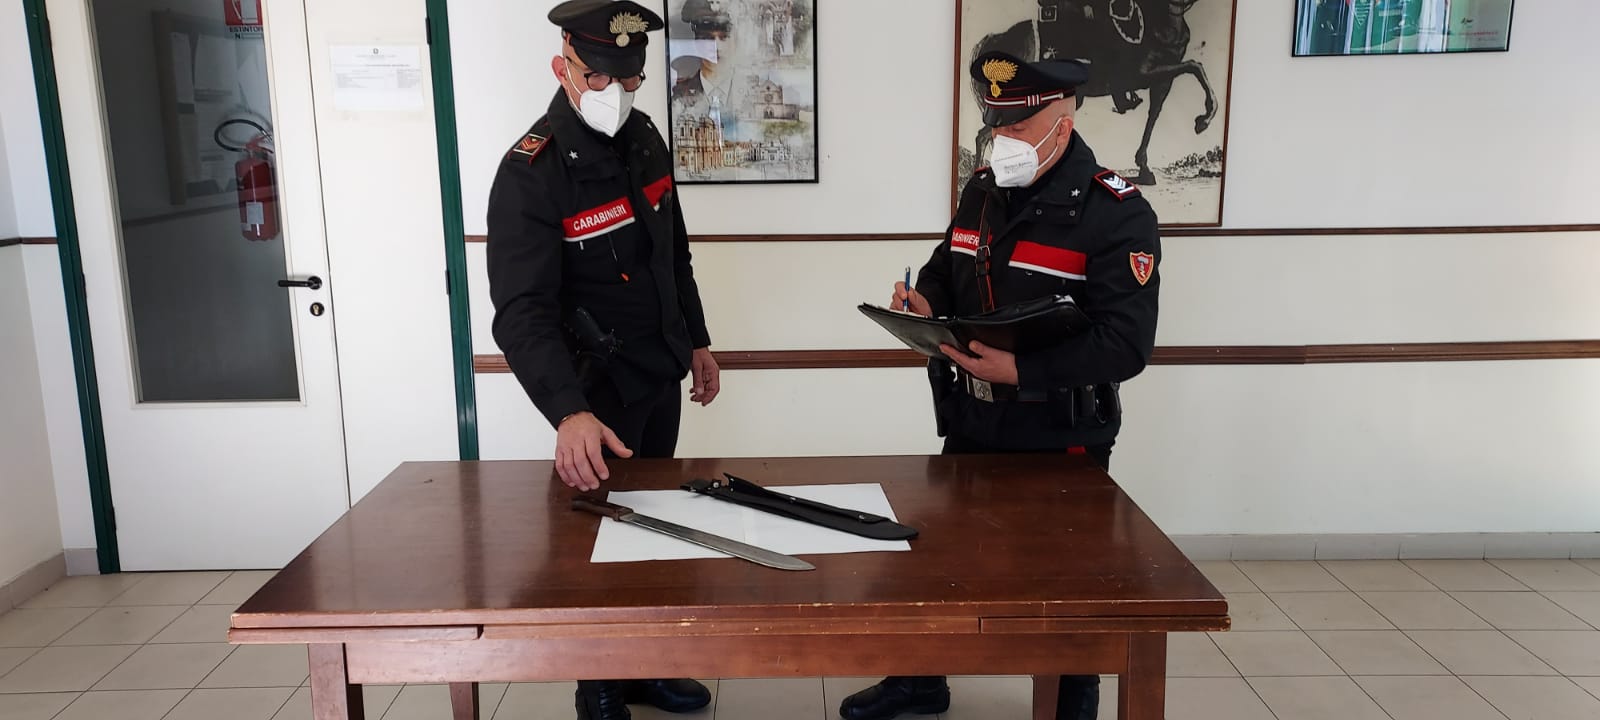 Machete sequestrato dall'Aliquota Radiomobile della Compagnia dei Carabinieri di Terracina